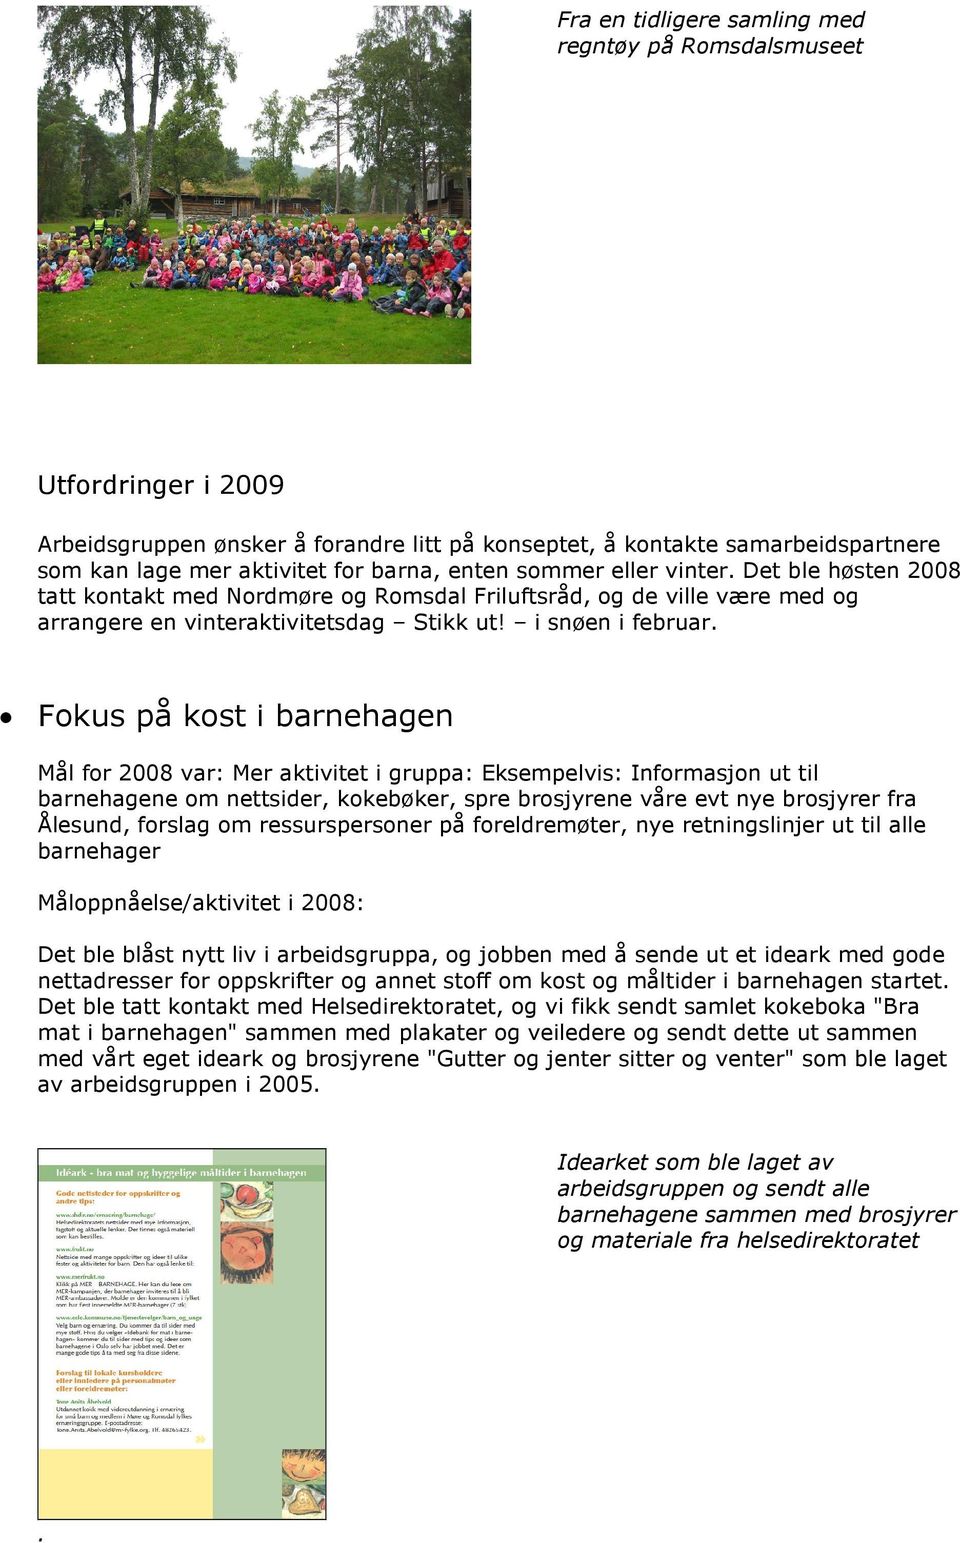 Fokus på kost i barnehagen Mål for 2008 var: Mer aktivitet i gruppa: Eksempelvis: Informasjon ut til barnehagene om nettsider, kokebøker, spre brosjyrene våre evt nye brosjyrer fra Ålesund, forslag